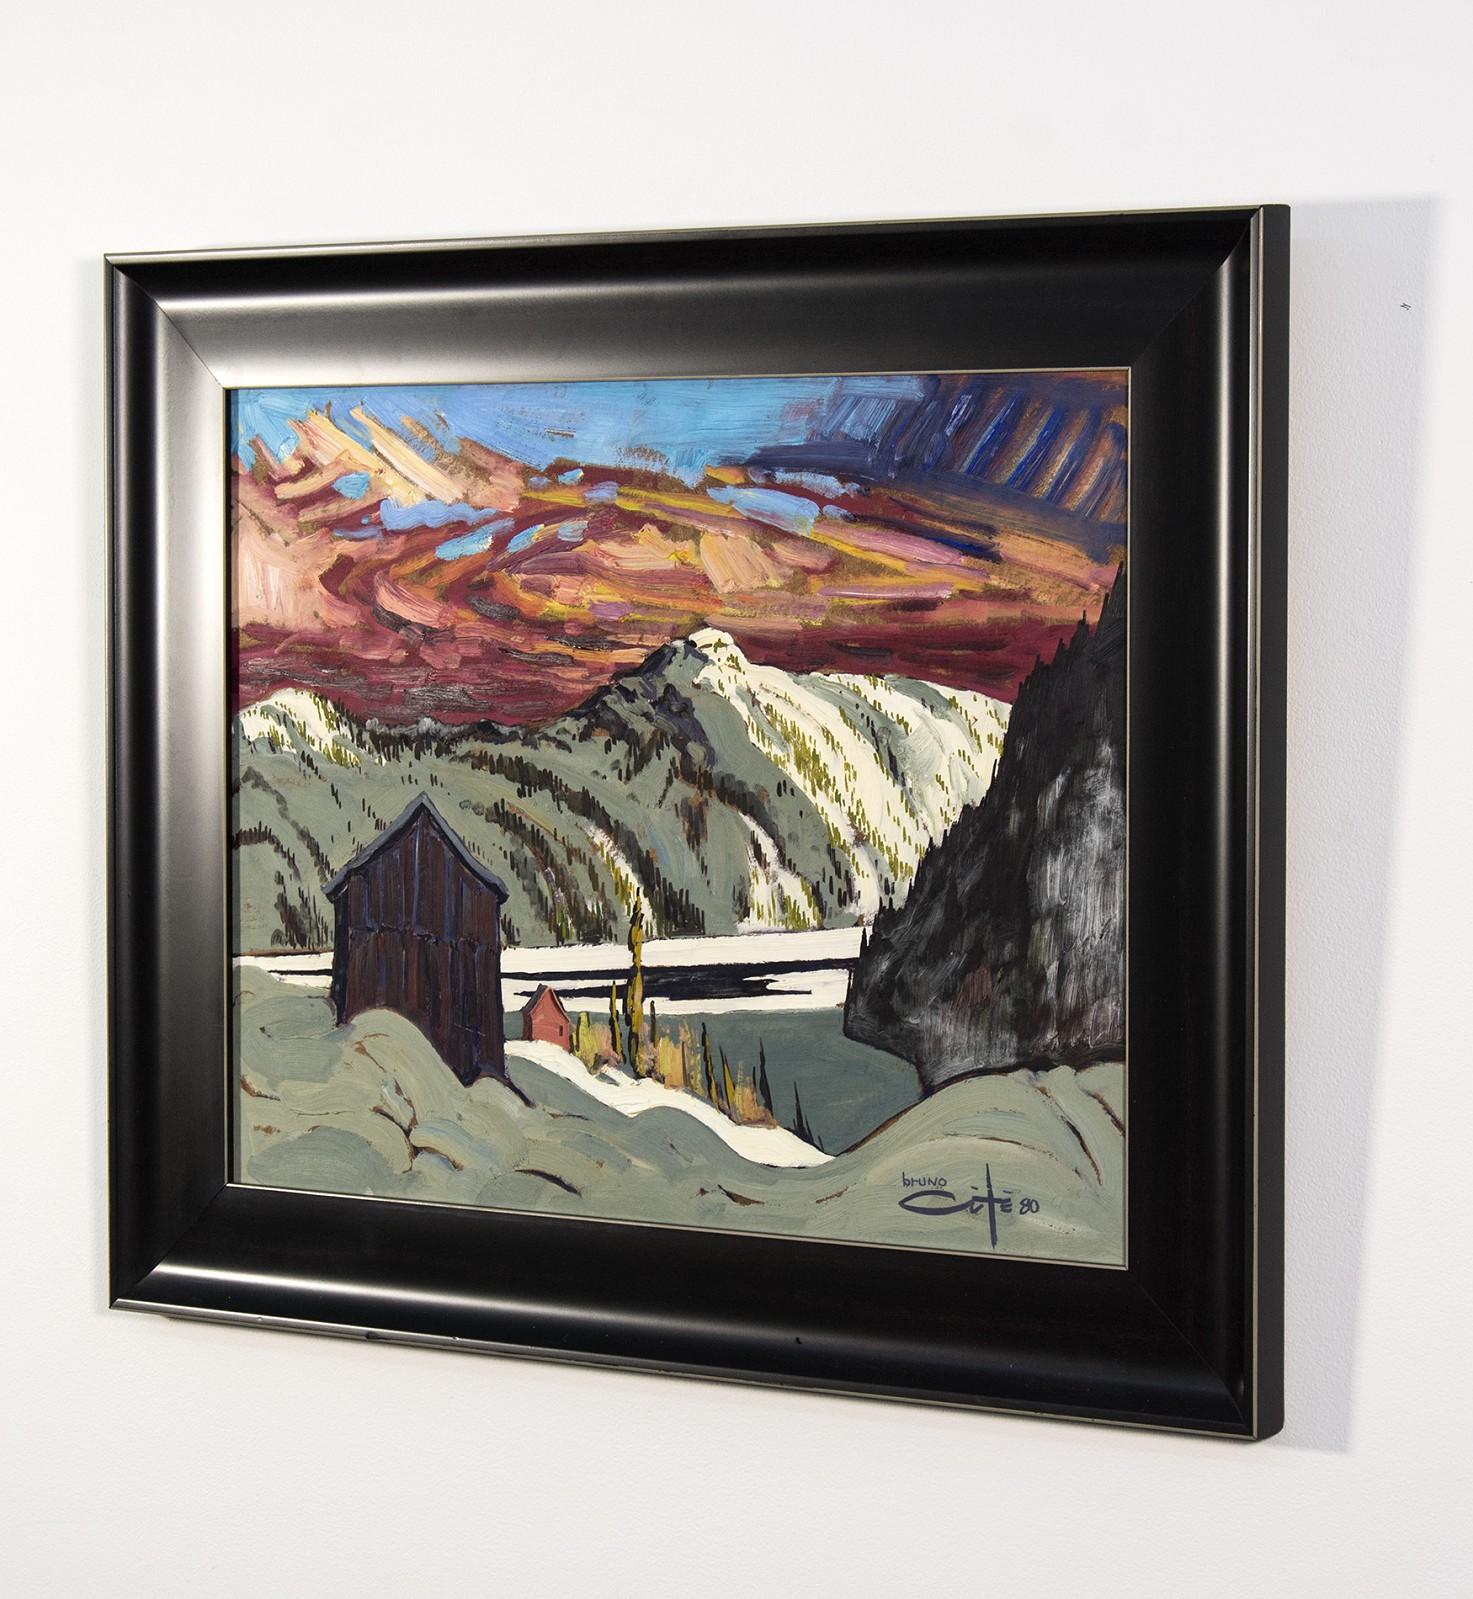 Pres De Sacre Coeur - 20th century expressionistic, mountainous landscape - Contemporary Painting by Bruno Côté